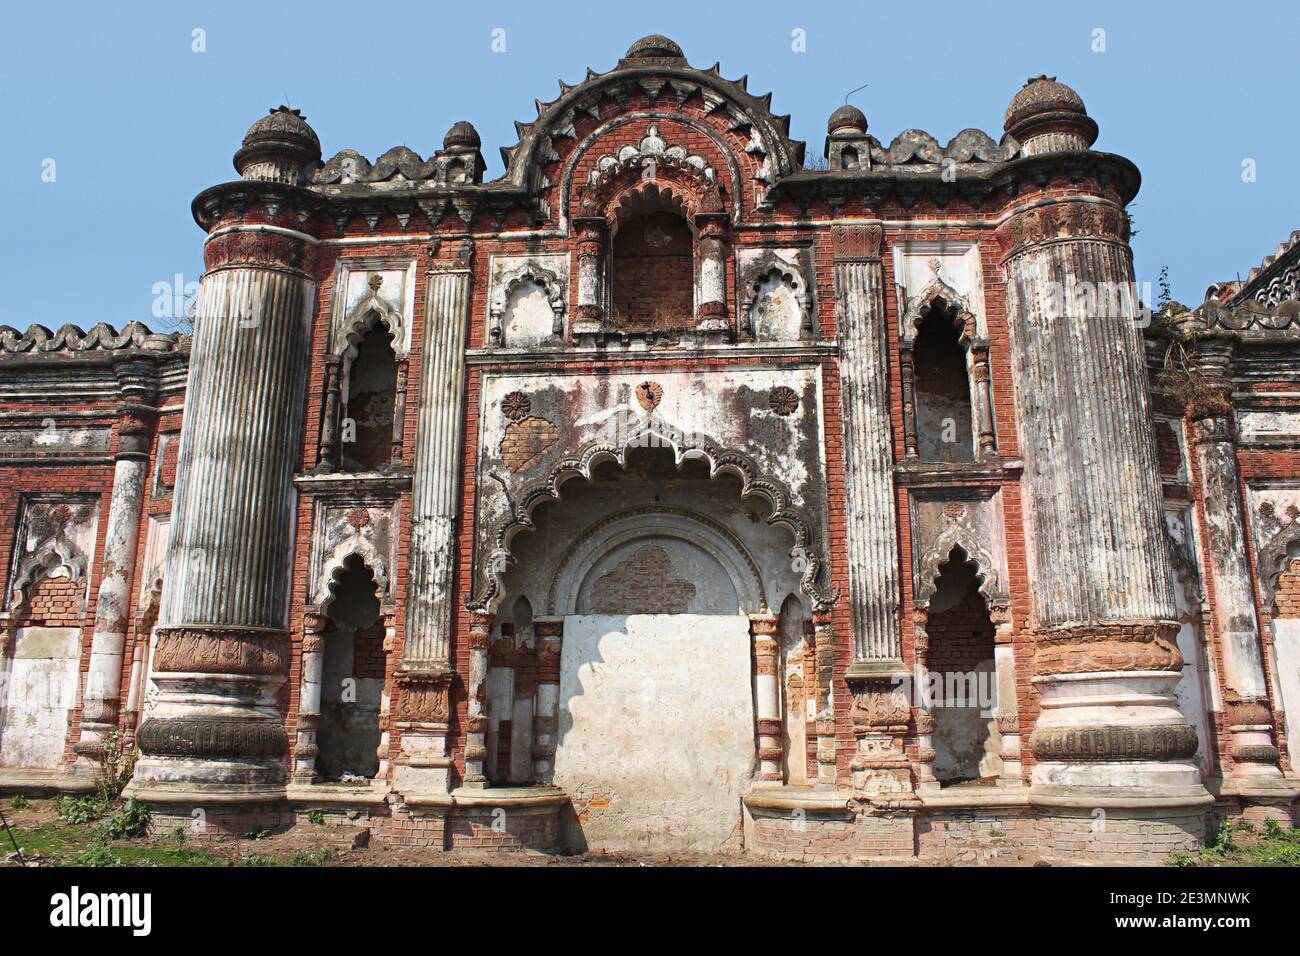 Hohe Pilaster, geriffelte Säulen und geschwungene Bögen in distintly europäischen Stil mit indischen Elementen gemischt, Wand des alten Palastes Darbhanga, Bihar, Indi Stockfoto